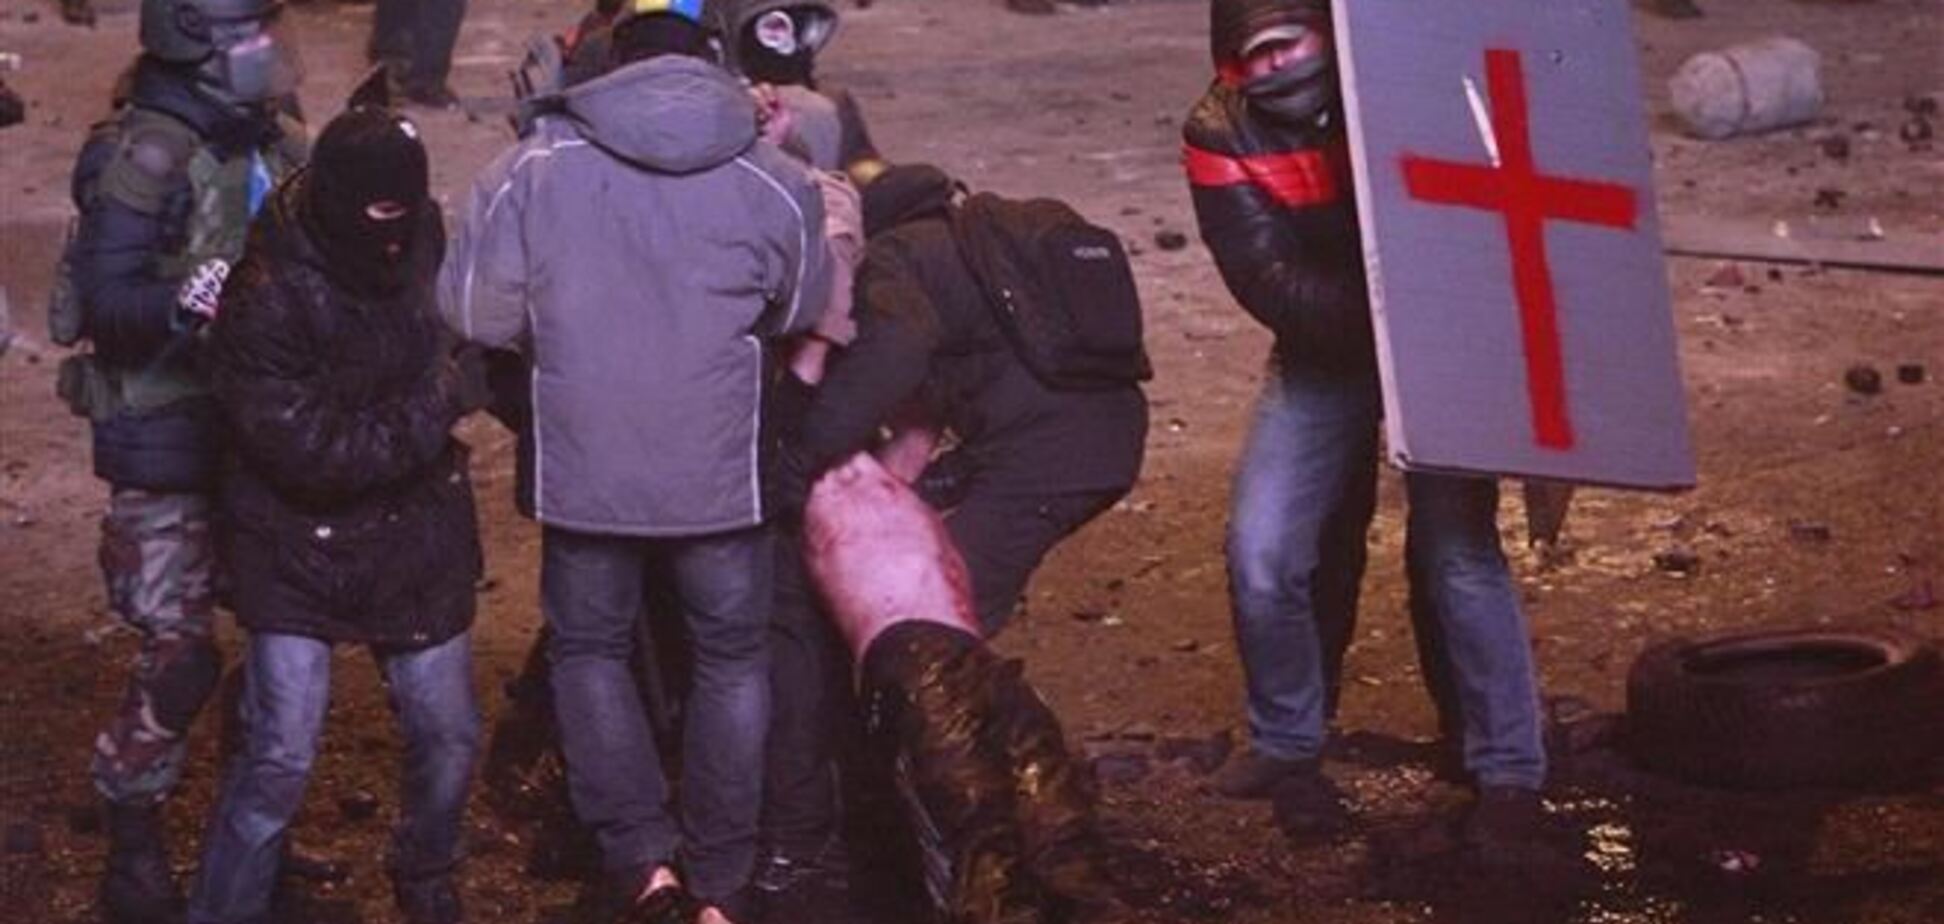 Варшава не имеет права лечить активистов Майдана за госсчет - польские СМИ